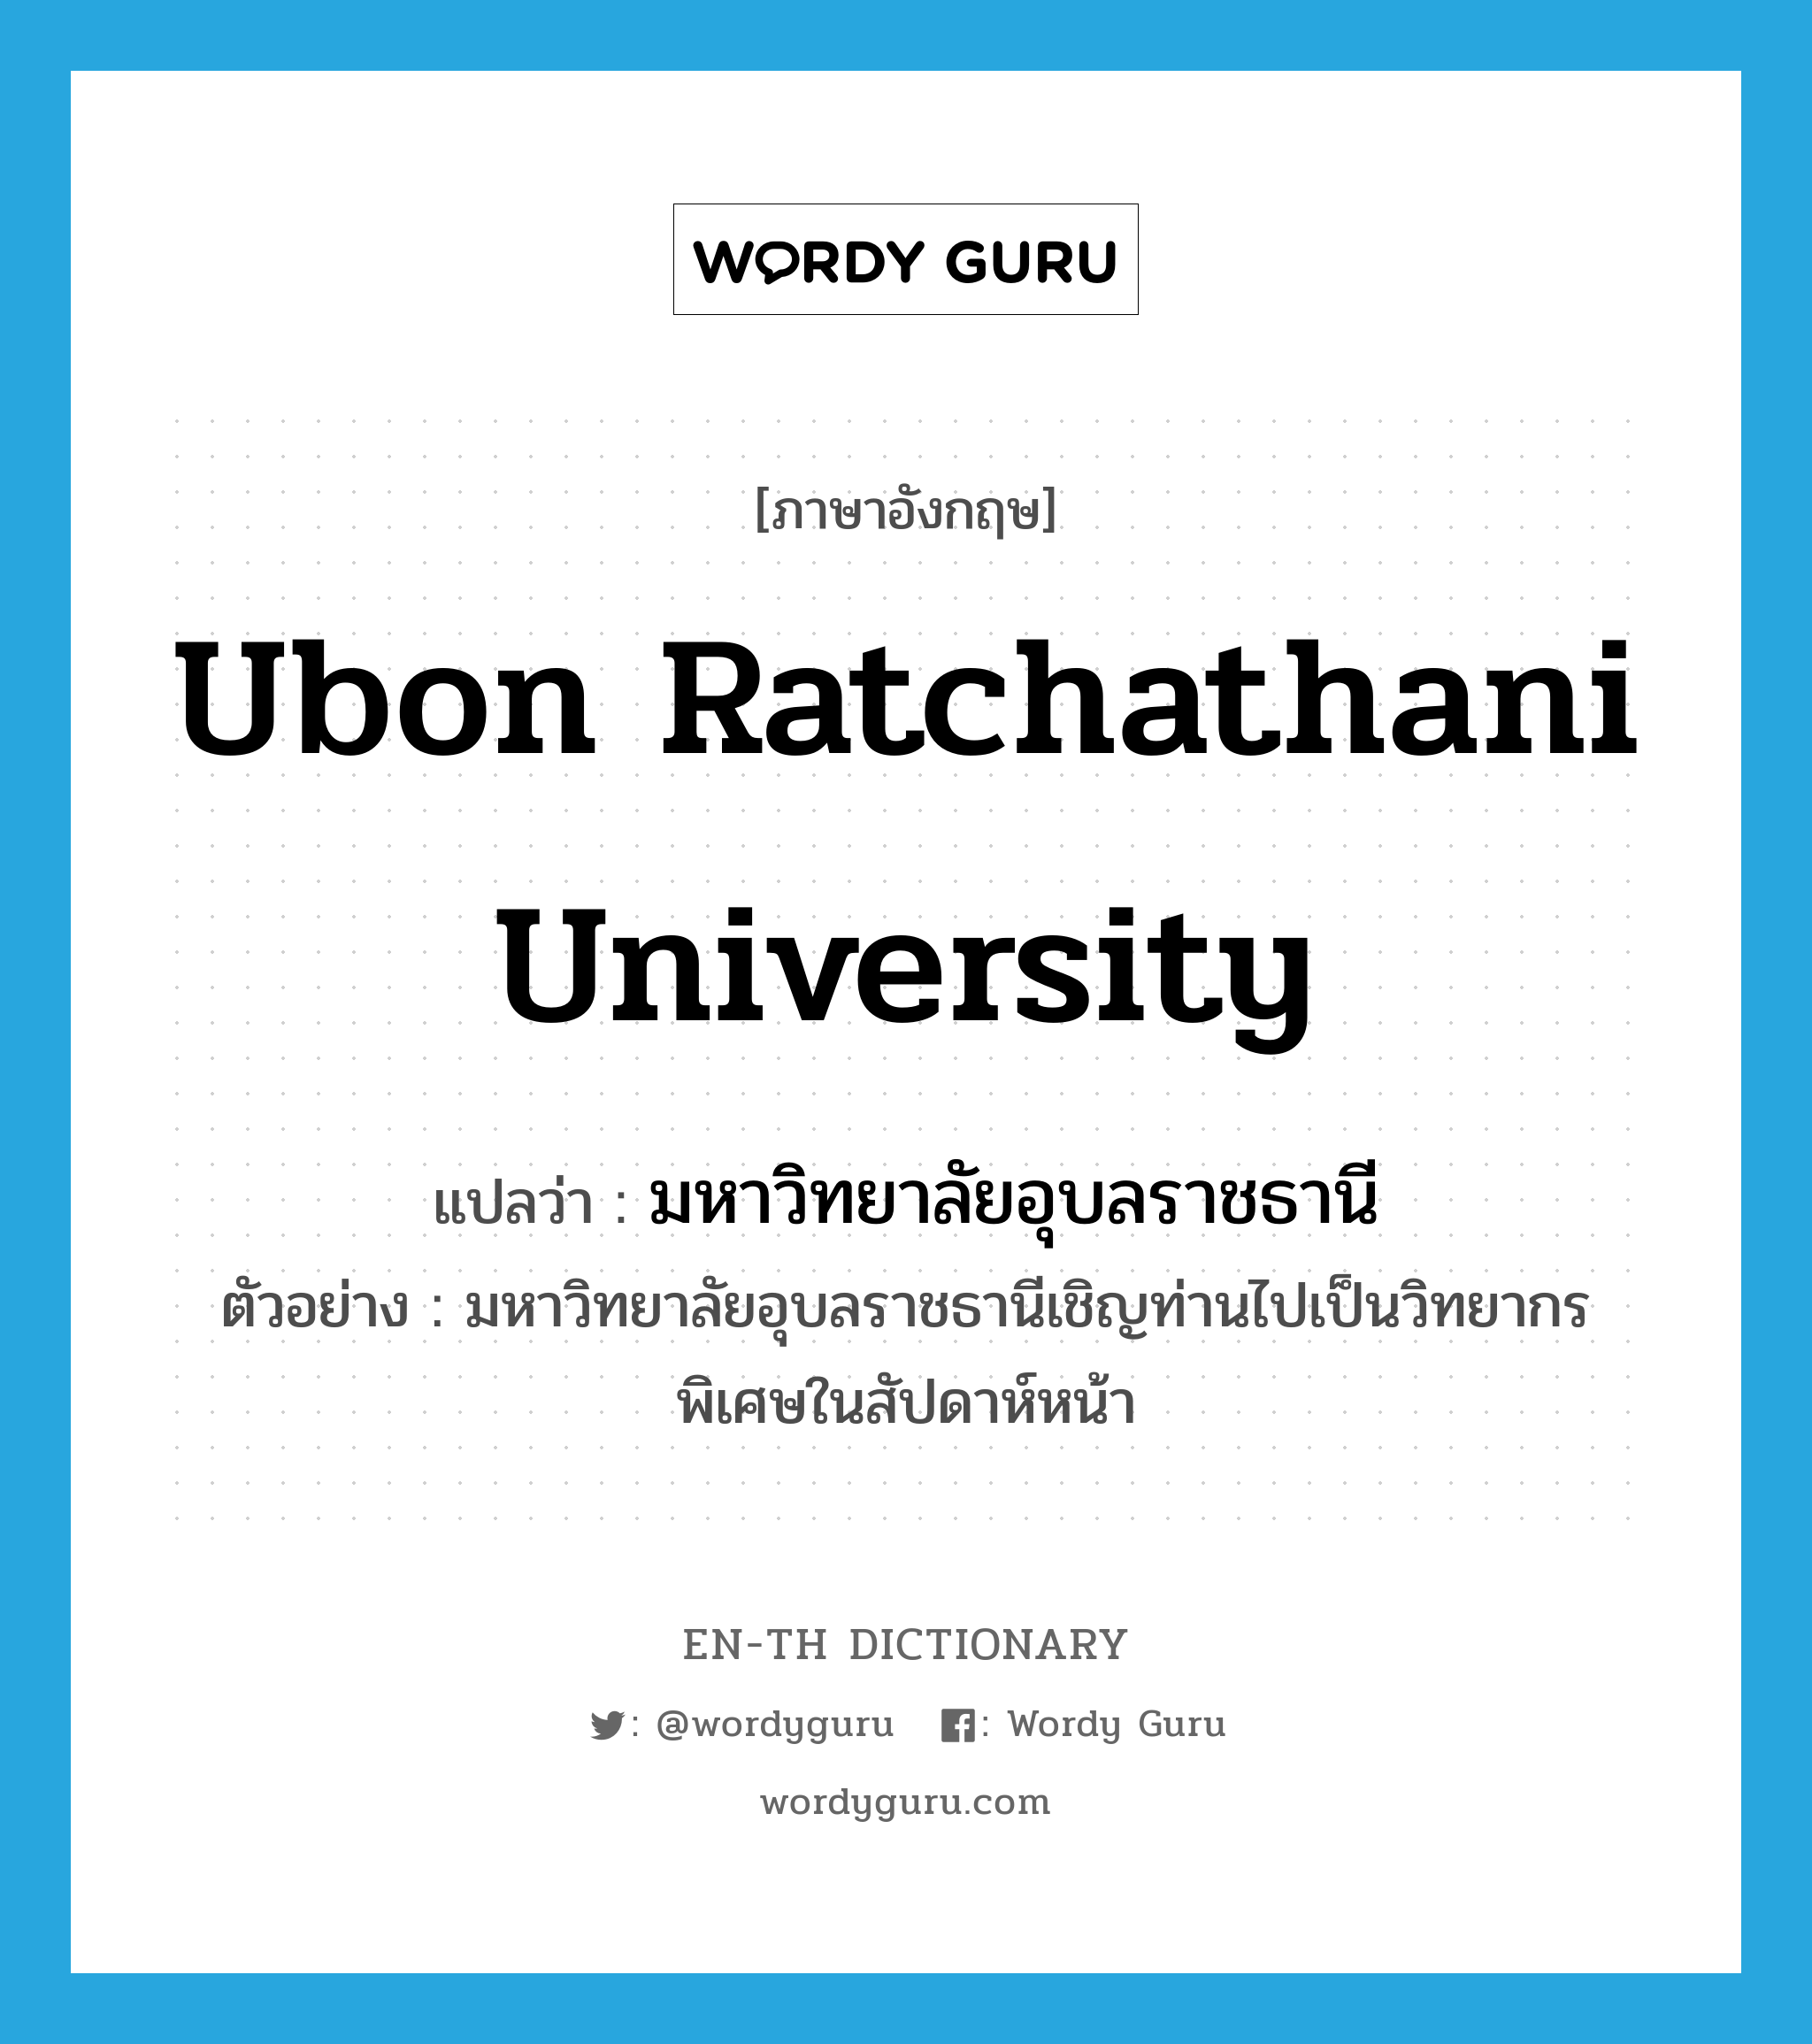 มหาวิทยาลัยอุบลราชธานี ภาษาอังกฤษ?, คำศัพท์ภาษาอังกฤษ มหาวิทยาลัยอุบลราชธานี แปลว่า Ubon Ratchathani University ประเภท N ตัวอย่าง มหาวิทยาลัยอุบลราชธานีเชิญท่านไปเป็นวิทยากรพิเศษในสัปดาห์หน้า หมวด N